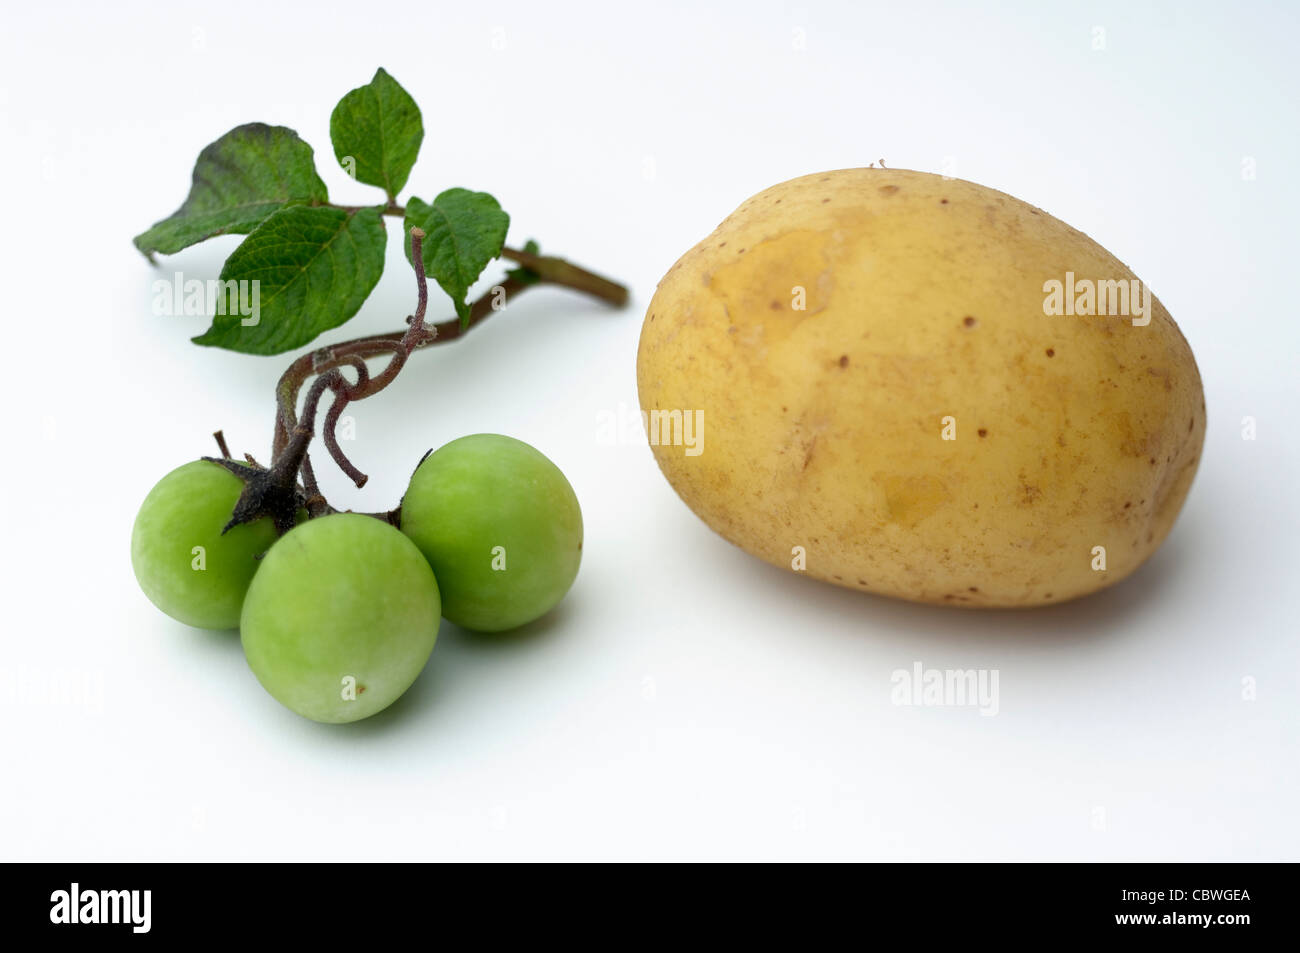 La papa (Solanum tuberosum). Ramita con pequeños frutos verdes y tubérculo comestible. Studio picture contra un fondo blanco. Foto de stock